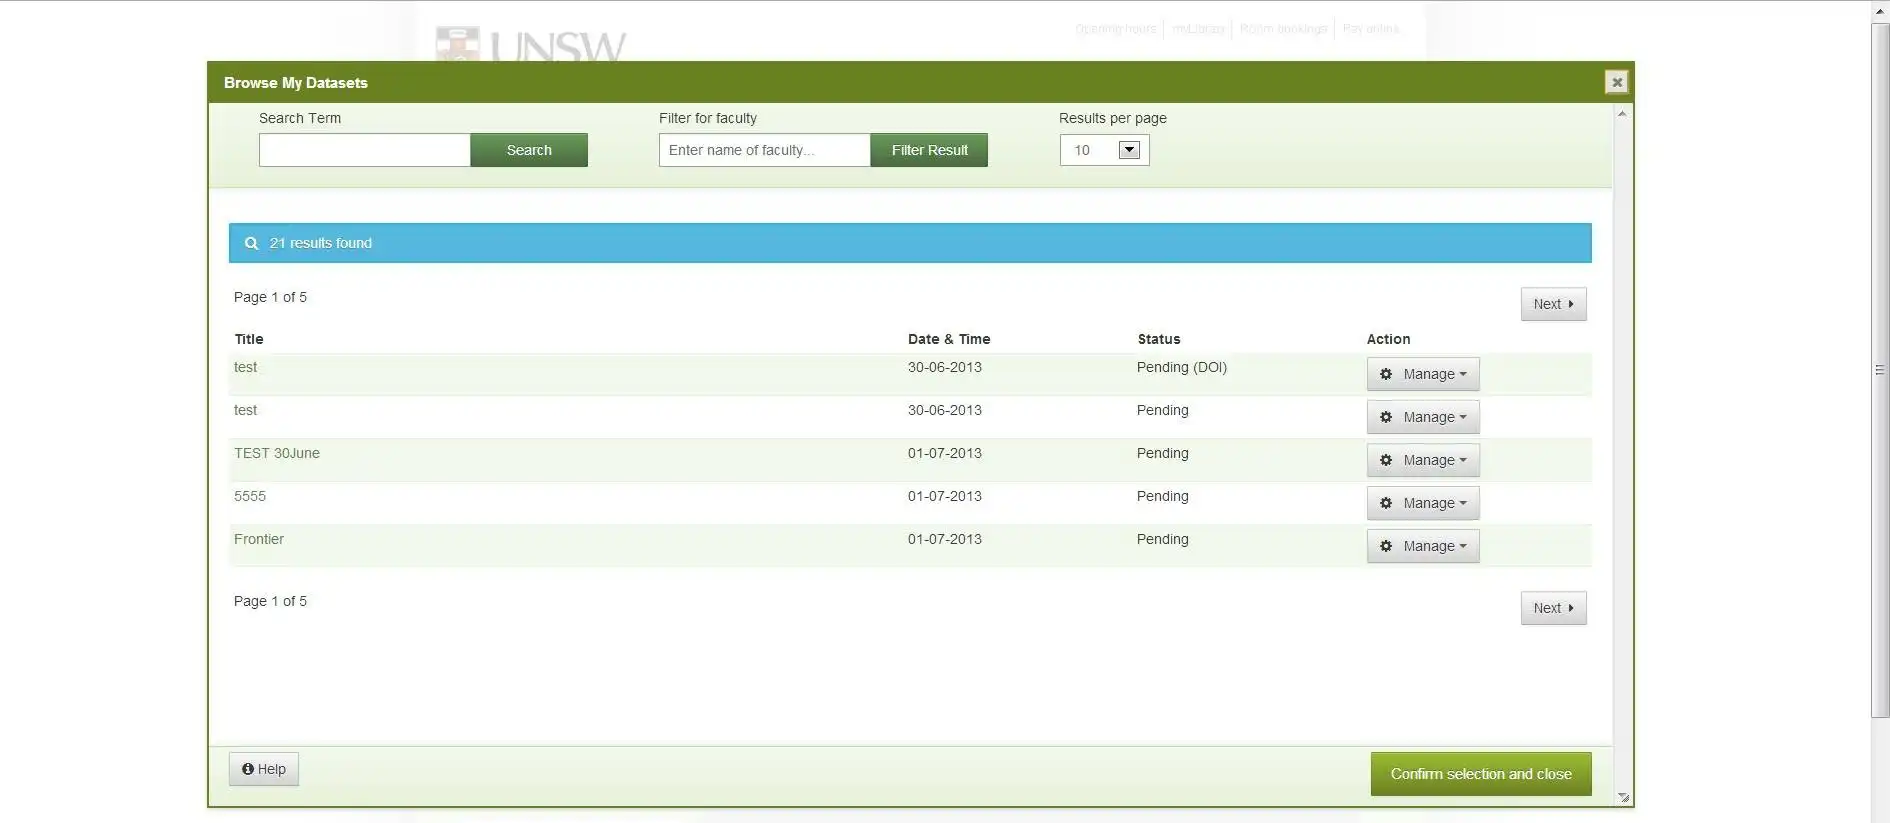 قم بتنزيل أداة الويب أو تطبيق الويب UNSW Metadata Stores (ResData) للتشغيل في Linux عبر الإنترنت